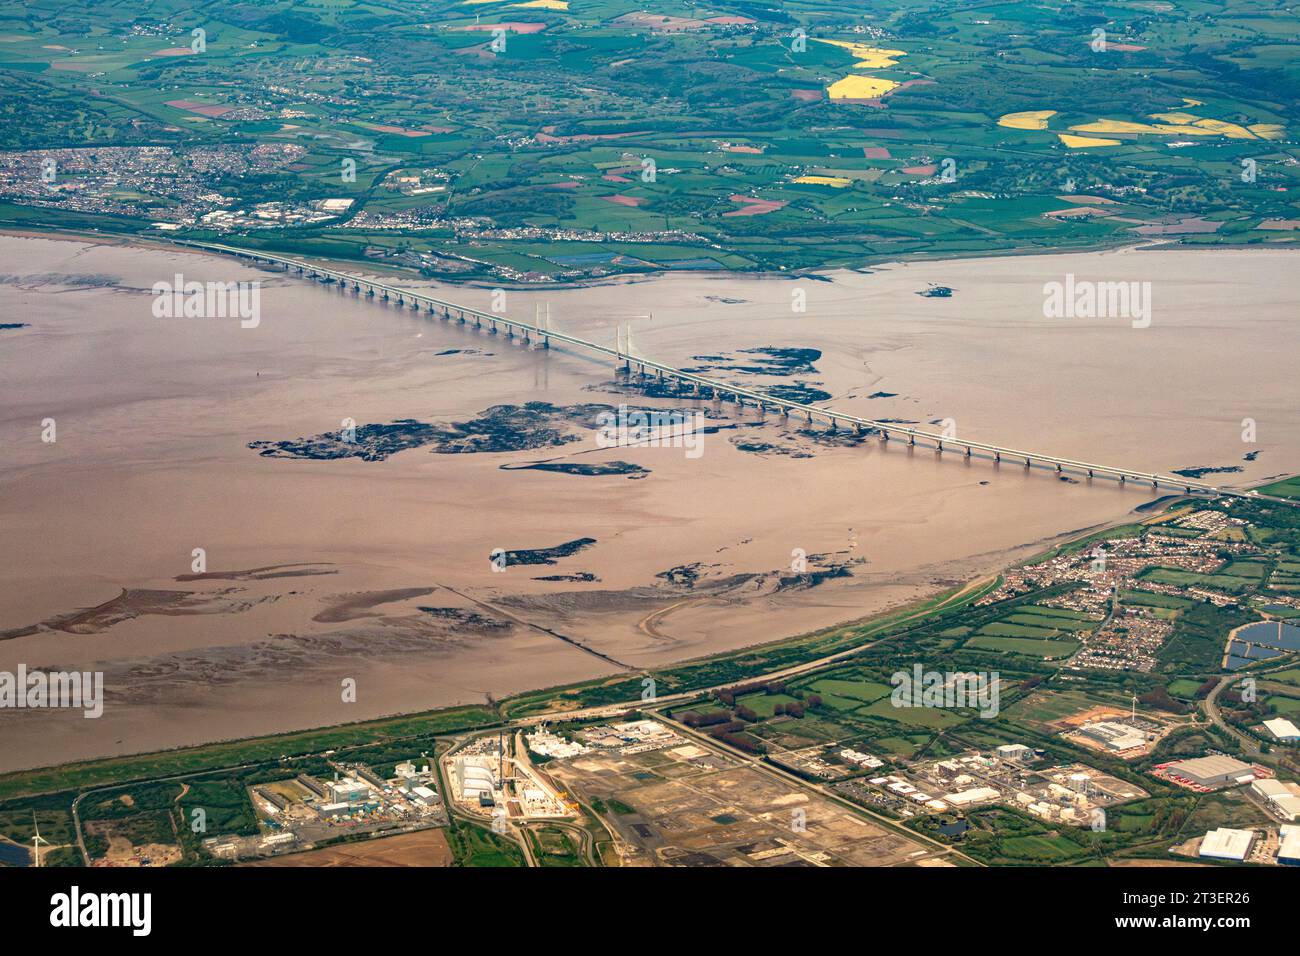 Une vue aérienne du second Severn Crossing (le pont Prince of Wales) à travers l'estuaire de la Severn entre l'Angleterre et le pays de Galles. Il a ouvert ses portes en 1996 Banque D'Images